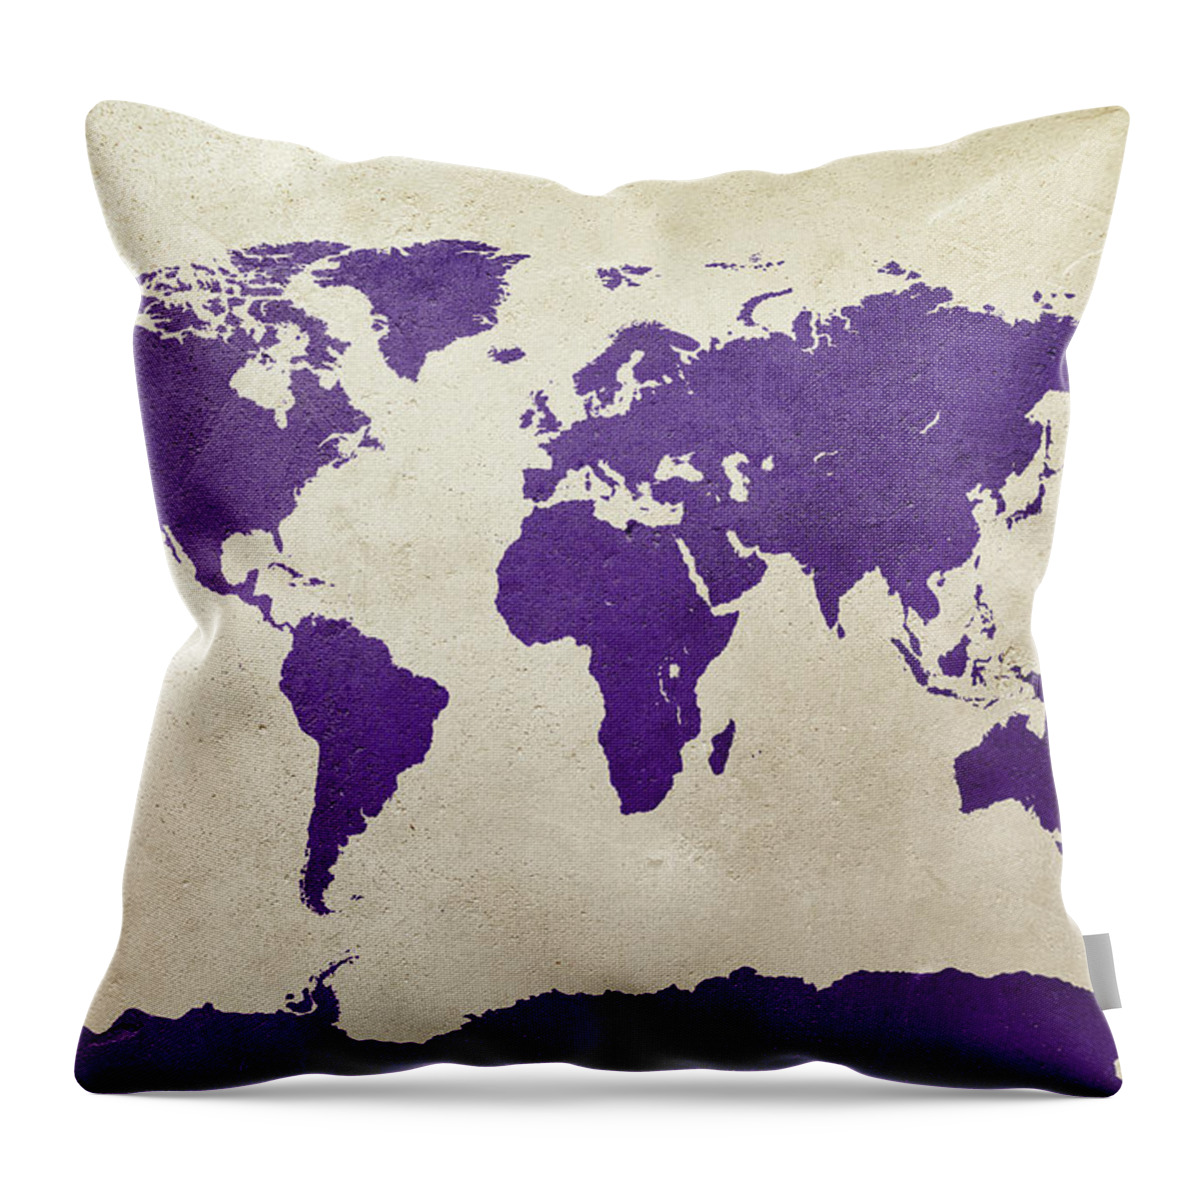 World Map Throw Pillow featuring the digital art World Map Purple by Michael Tompsett